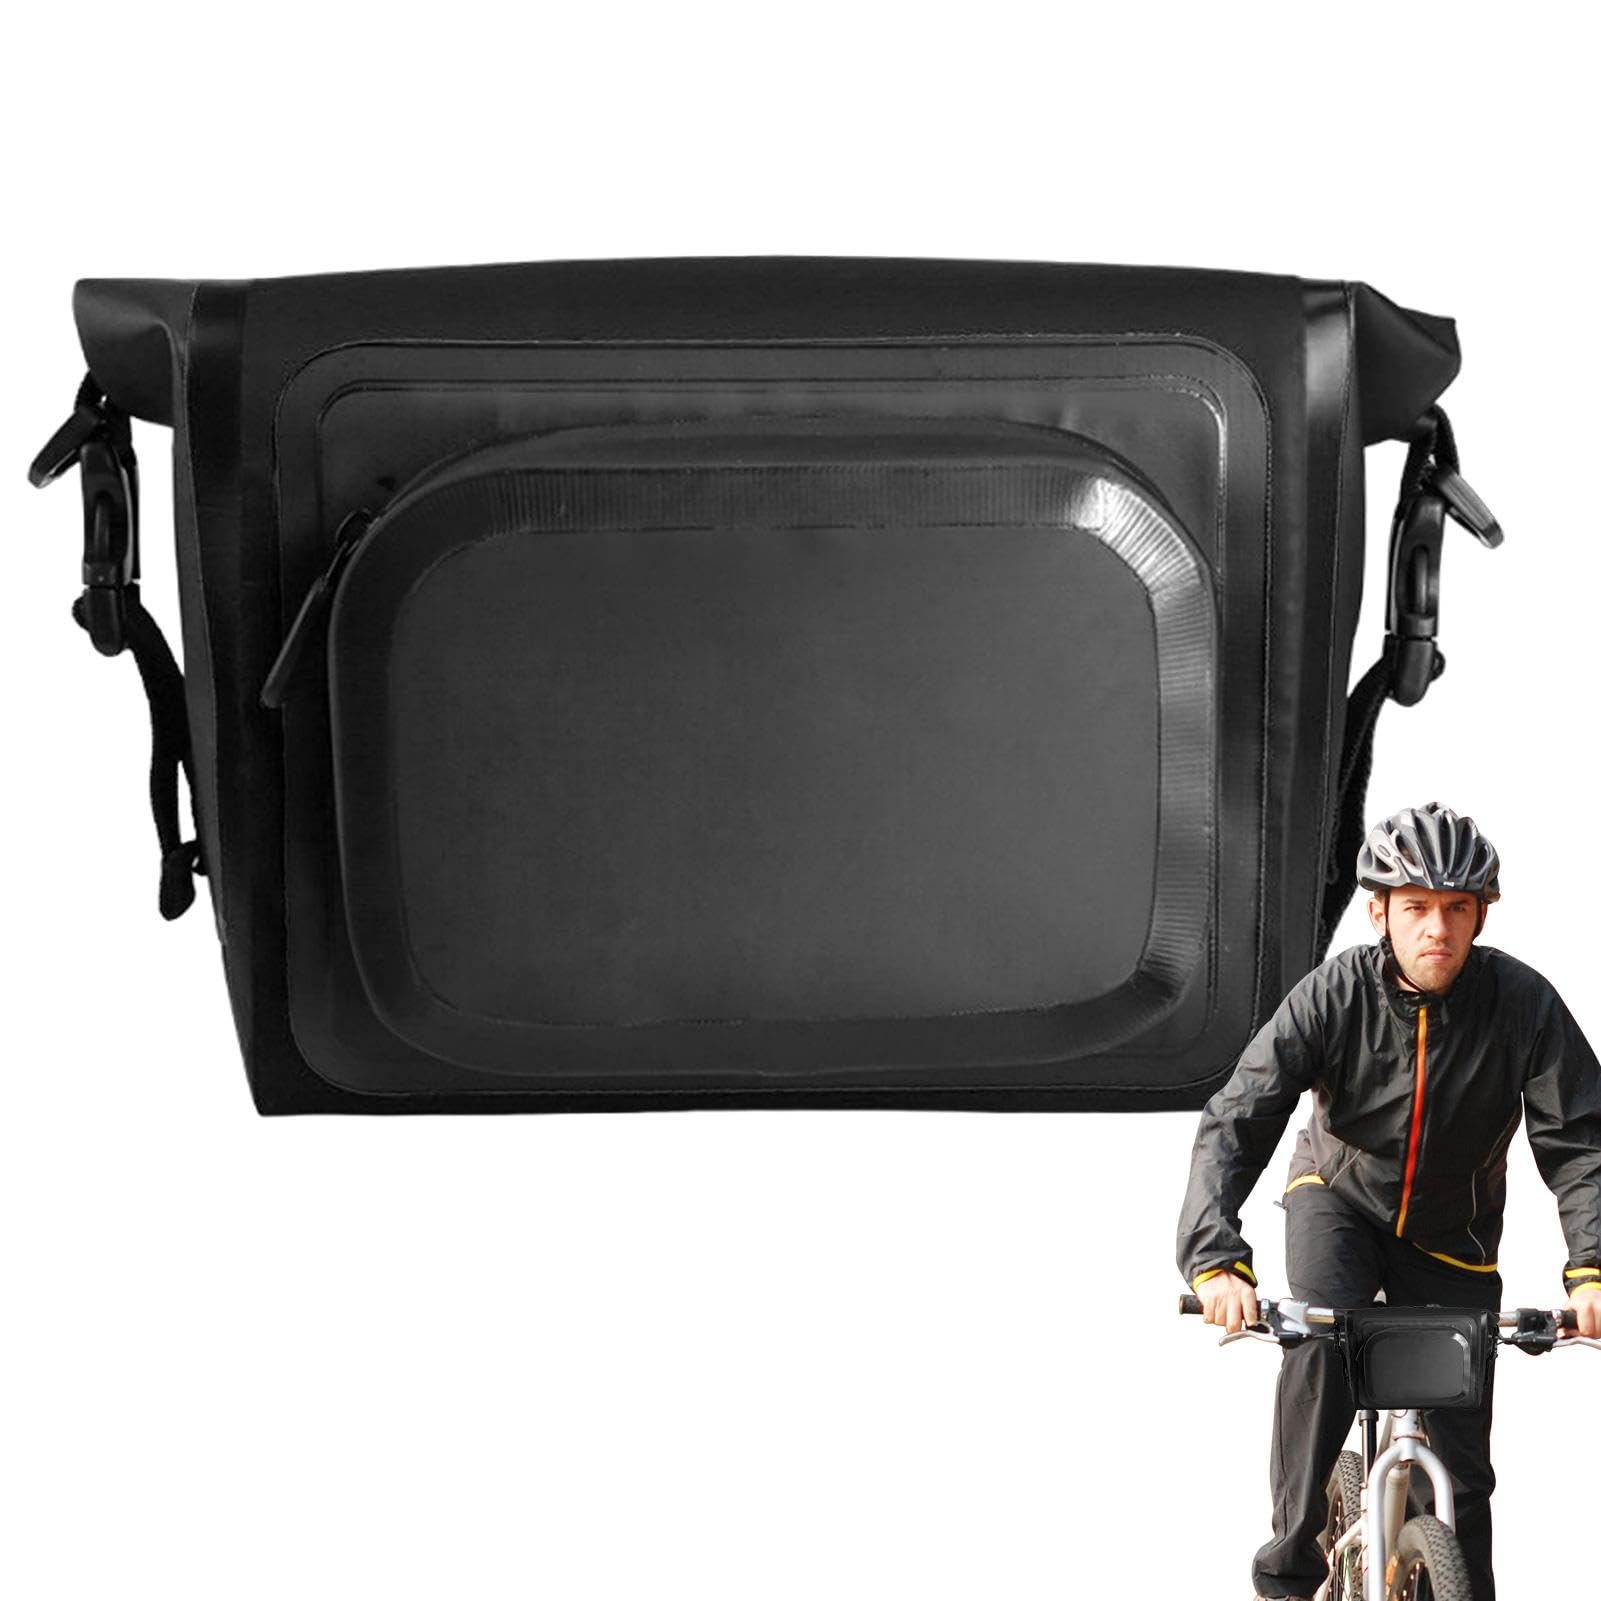 Raypontia Fahrradträgertasche, Crossbar-Fronttasche, wasserdichte Tasche zur Aufbewahrung des Vorderrahmens, Multifunktionale Hüfttasche, Aufbewahrungstasche für Fahrradzubehör, Umhängetasche für von Raypontia